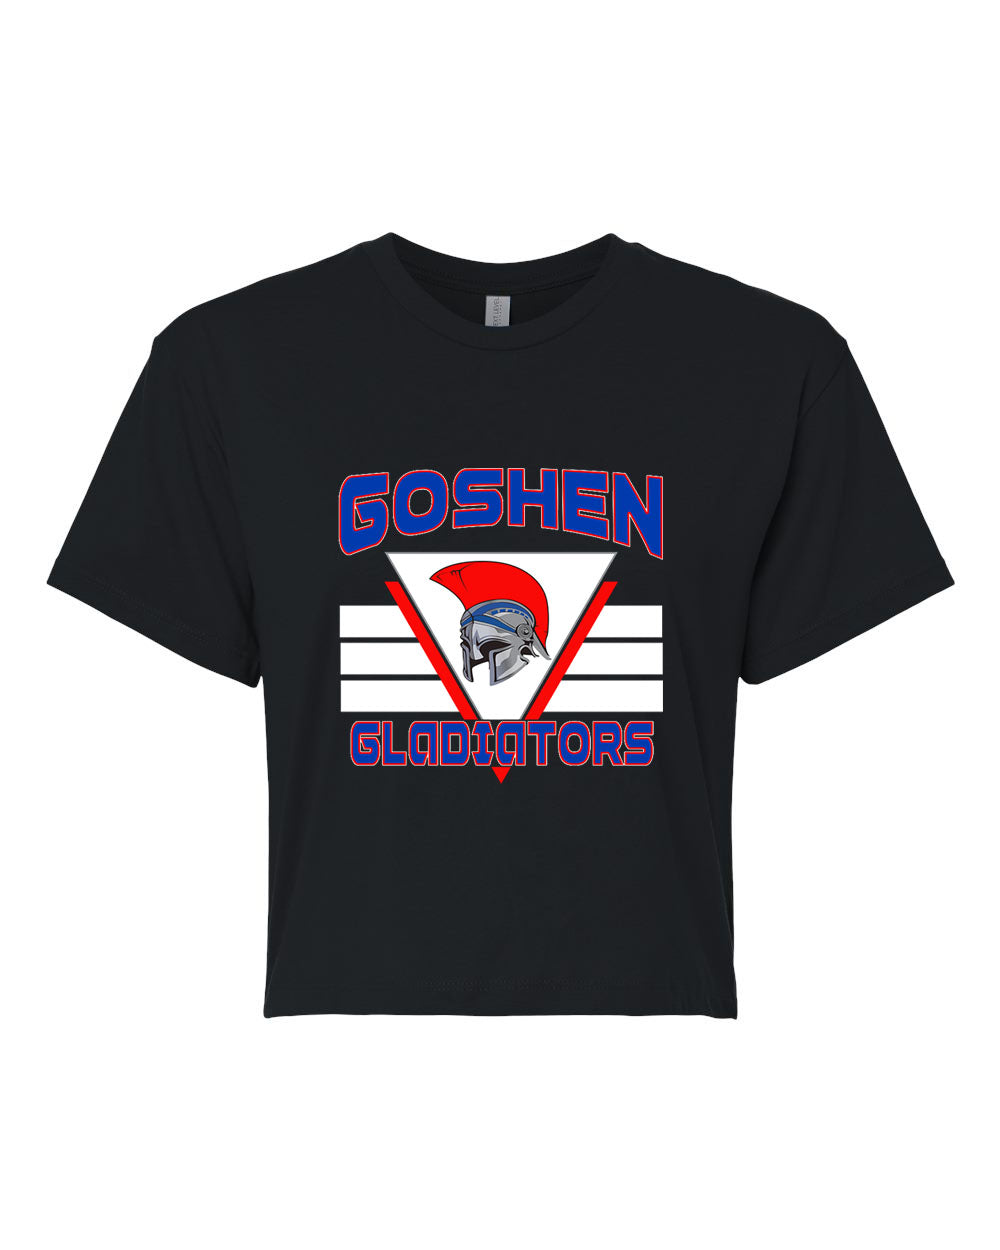 Goshen School Design 2 Crop Top